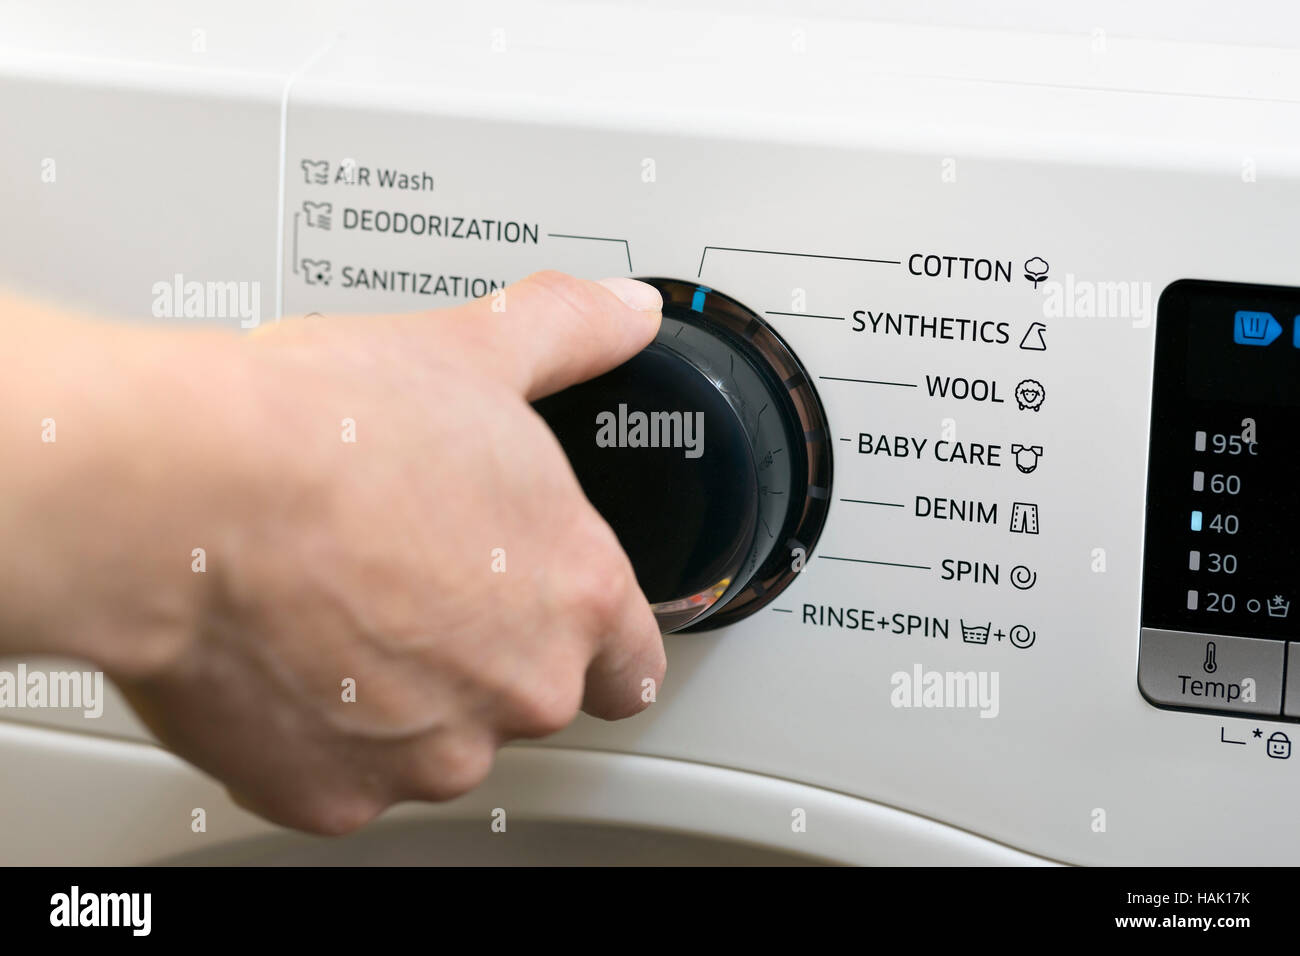 Servizio lavanderia giorno - impostazione di lavaggio programma macchina Foto Stock